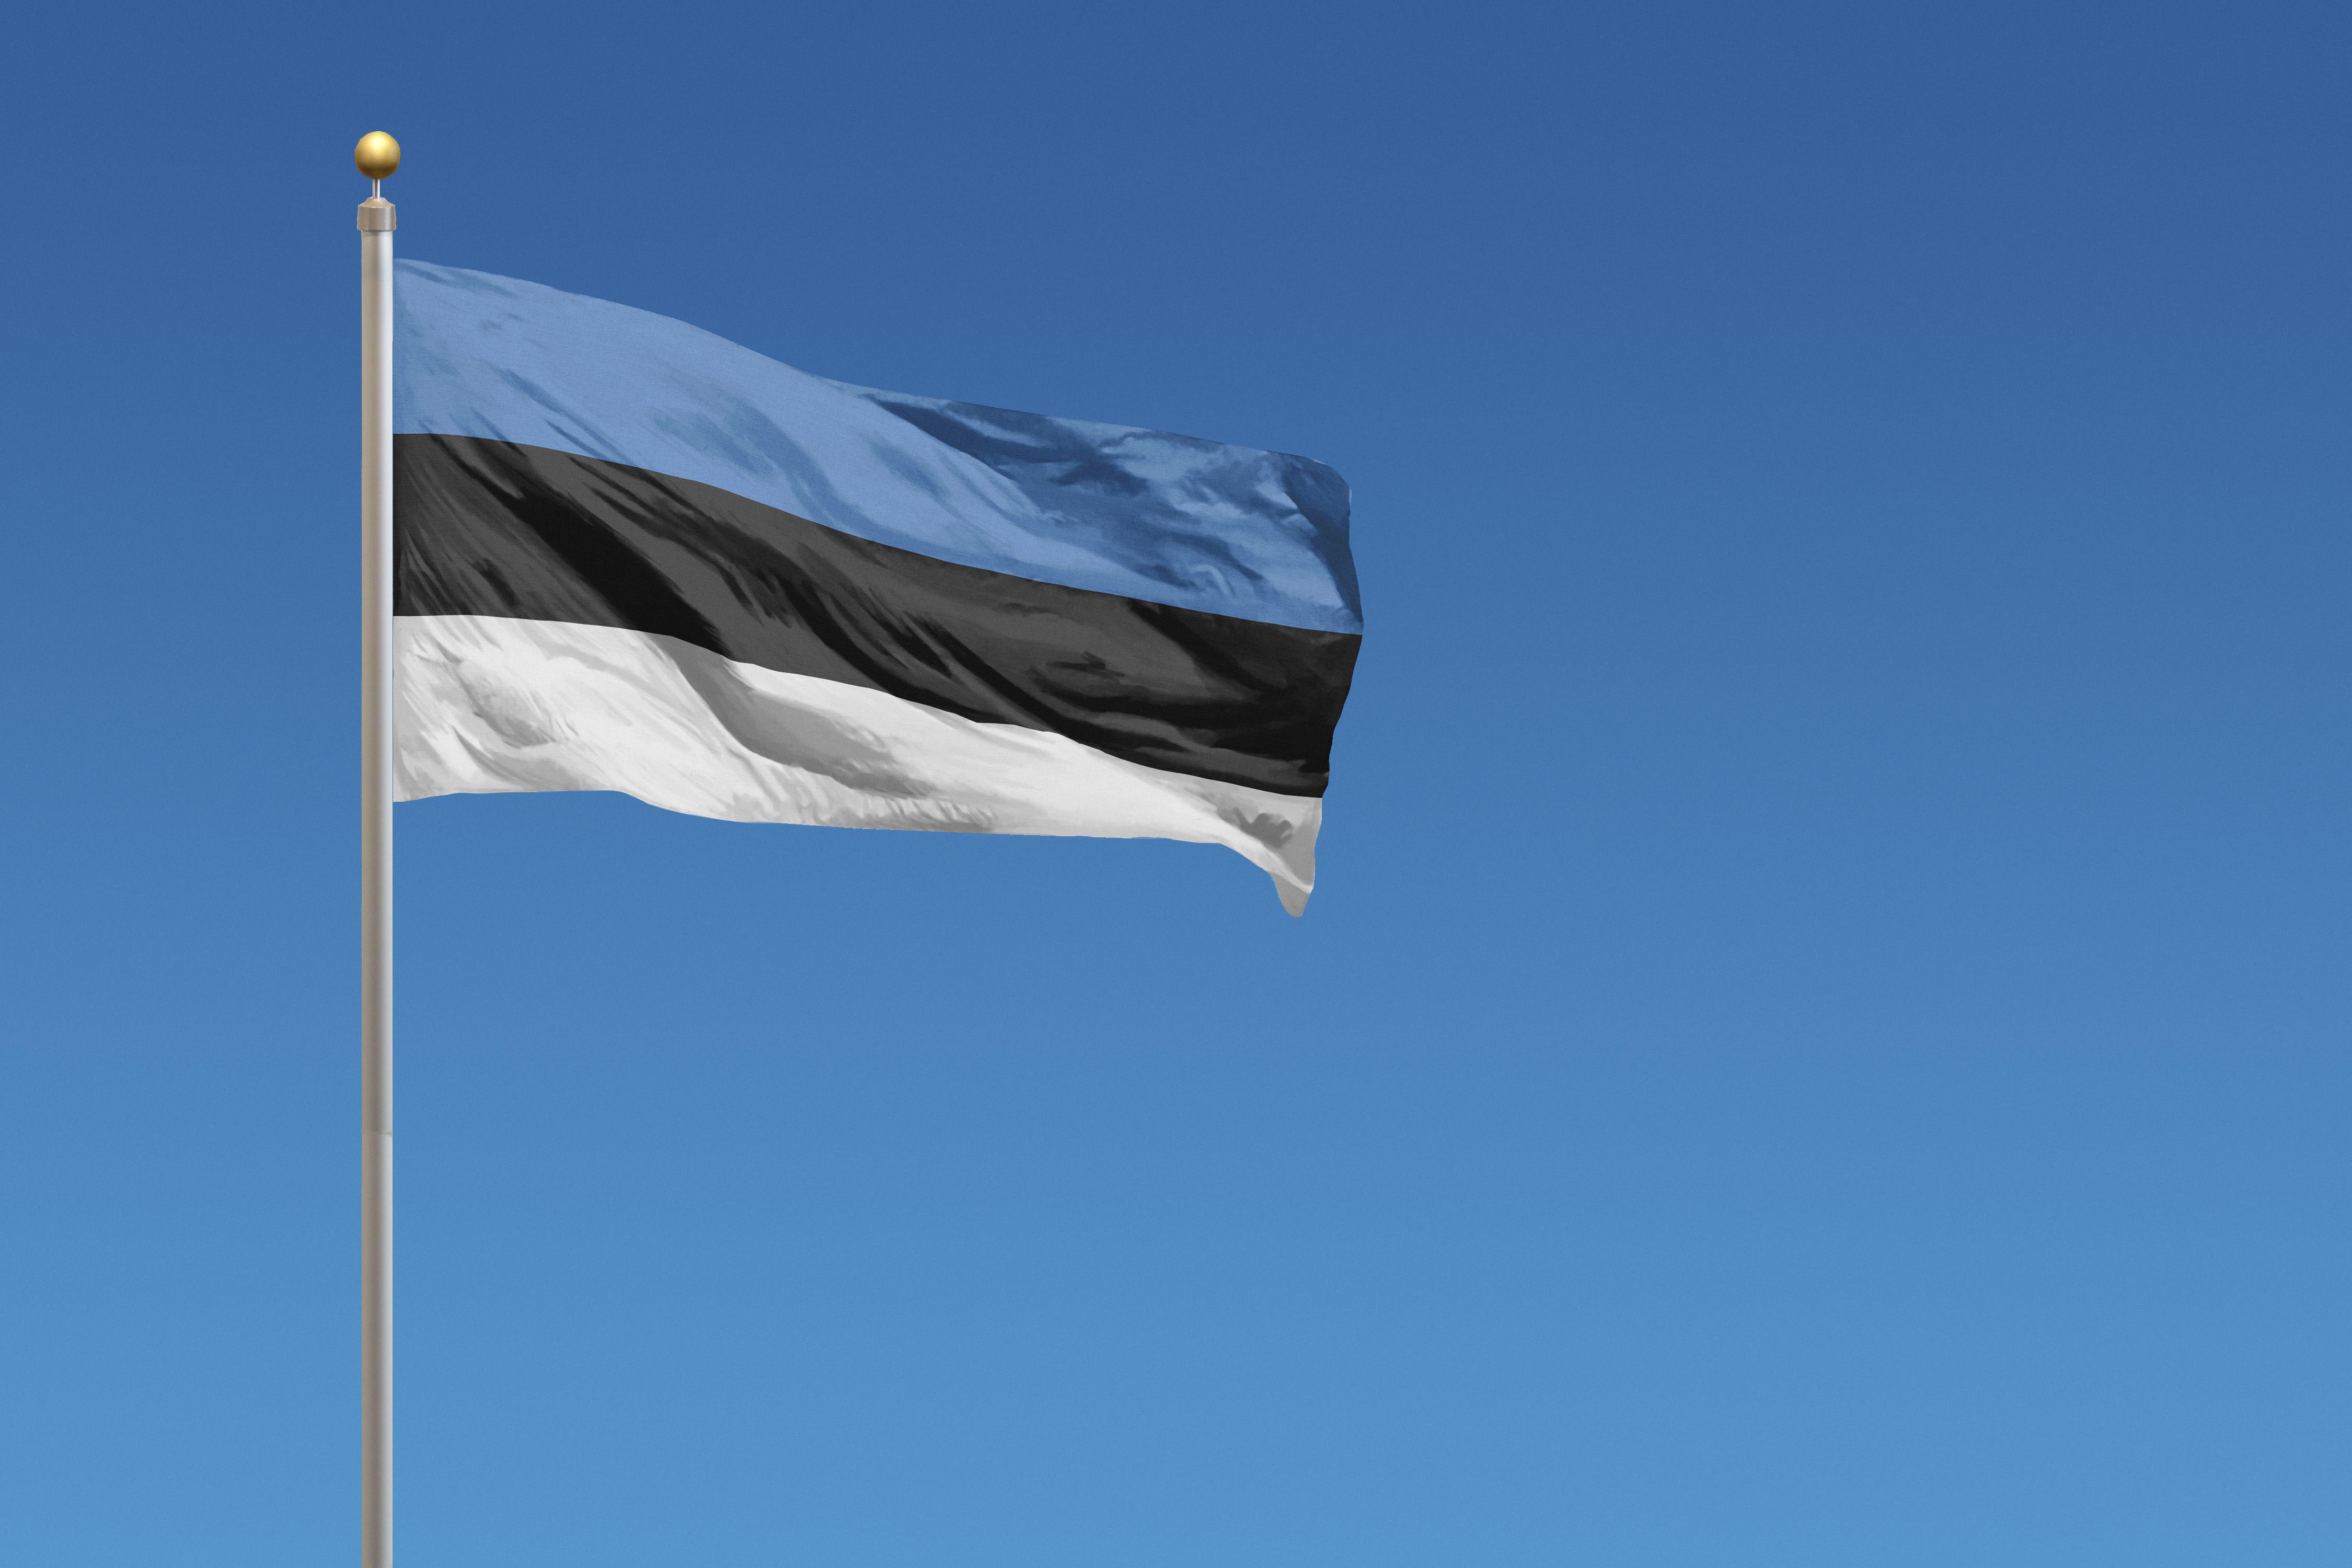 sinimustvalge Eesti lipp